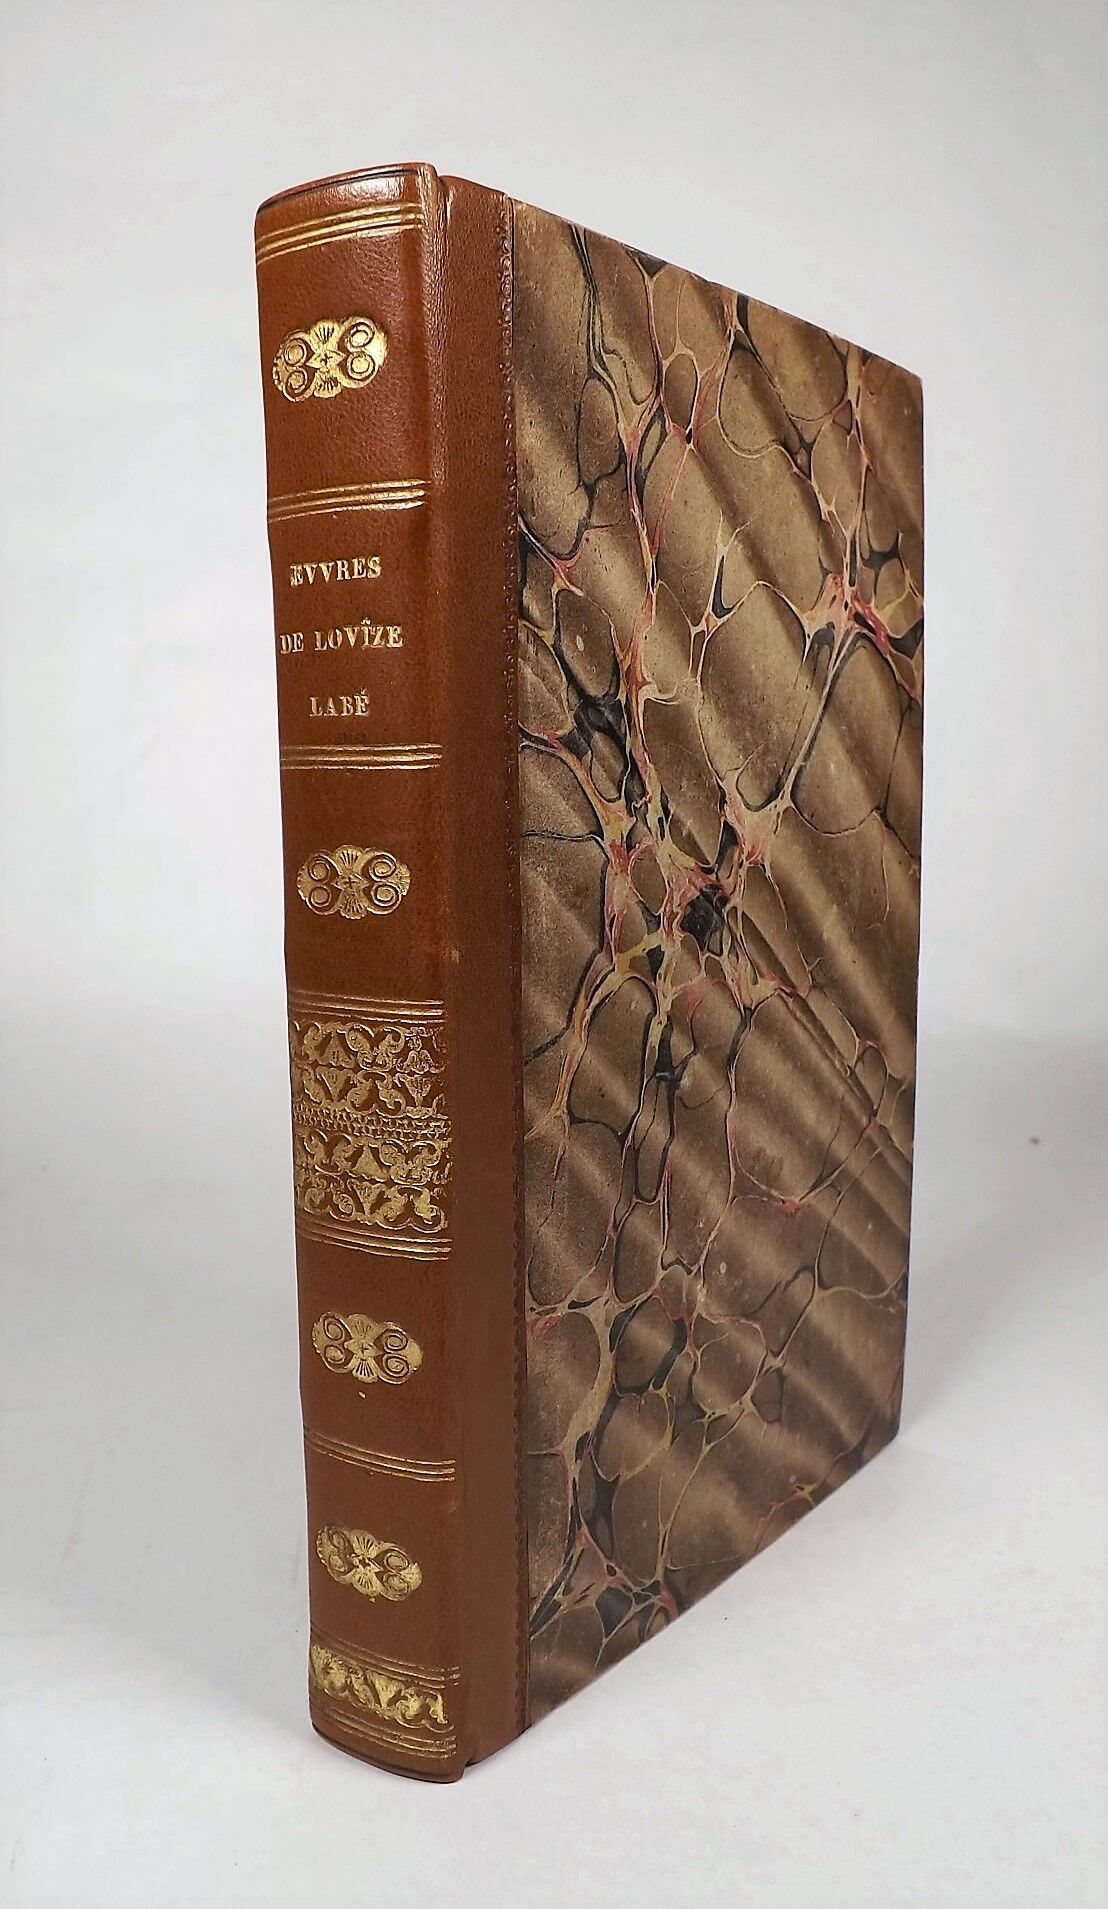 Null LABE（路易丝）。洛维兹-拉贝的作品。里昂，Durand et Perrin, 1824。8开本，半棕褐色基质，书脊有装饰，边缘有大理石花纹（拼接装&hellip;